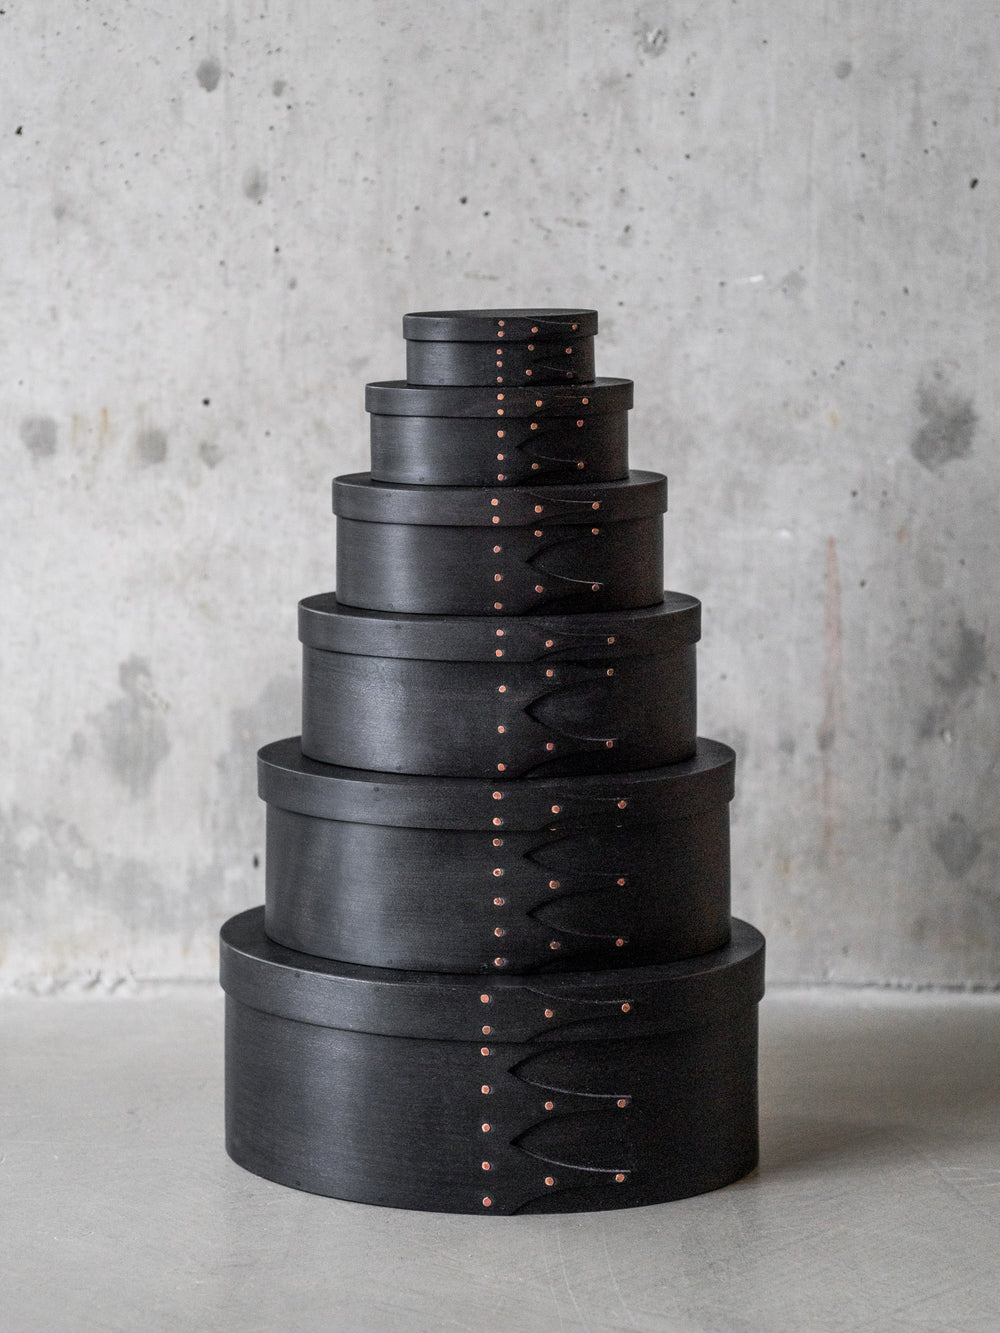 Masashi Ifuji Oval Box – Veg-Dyed Black